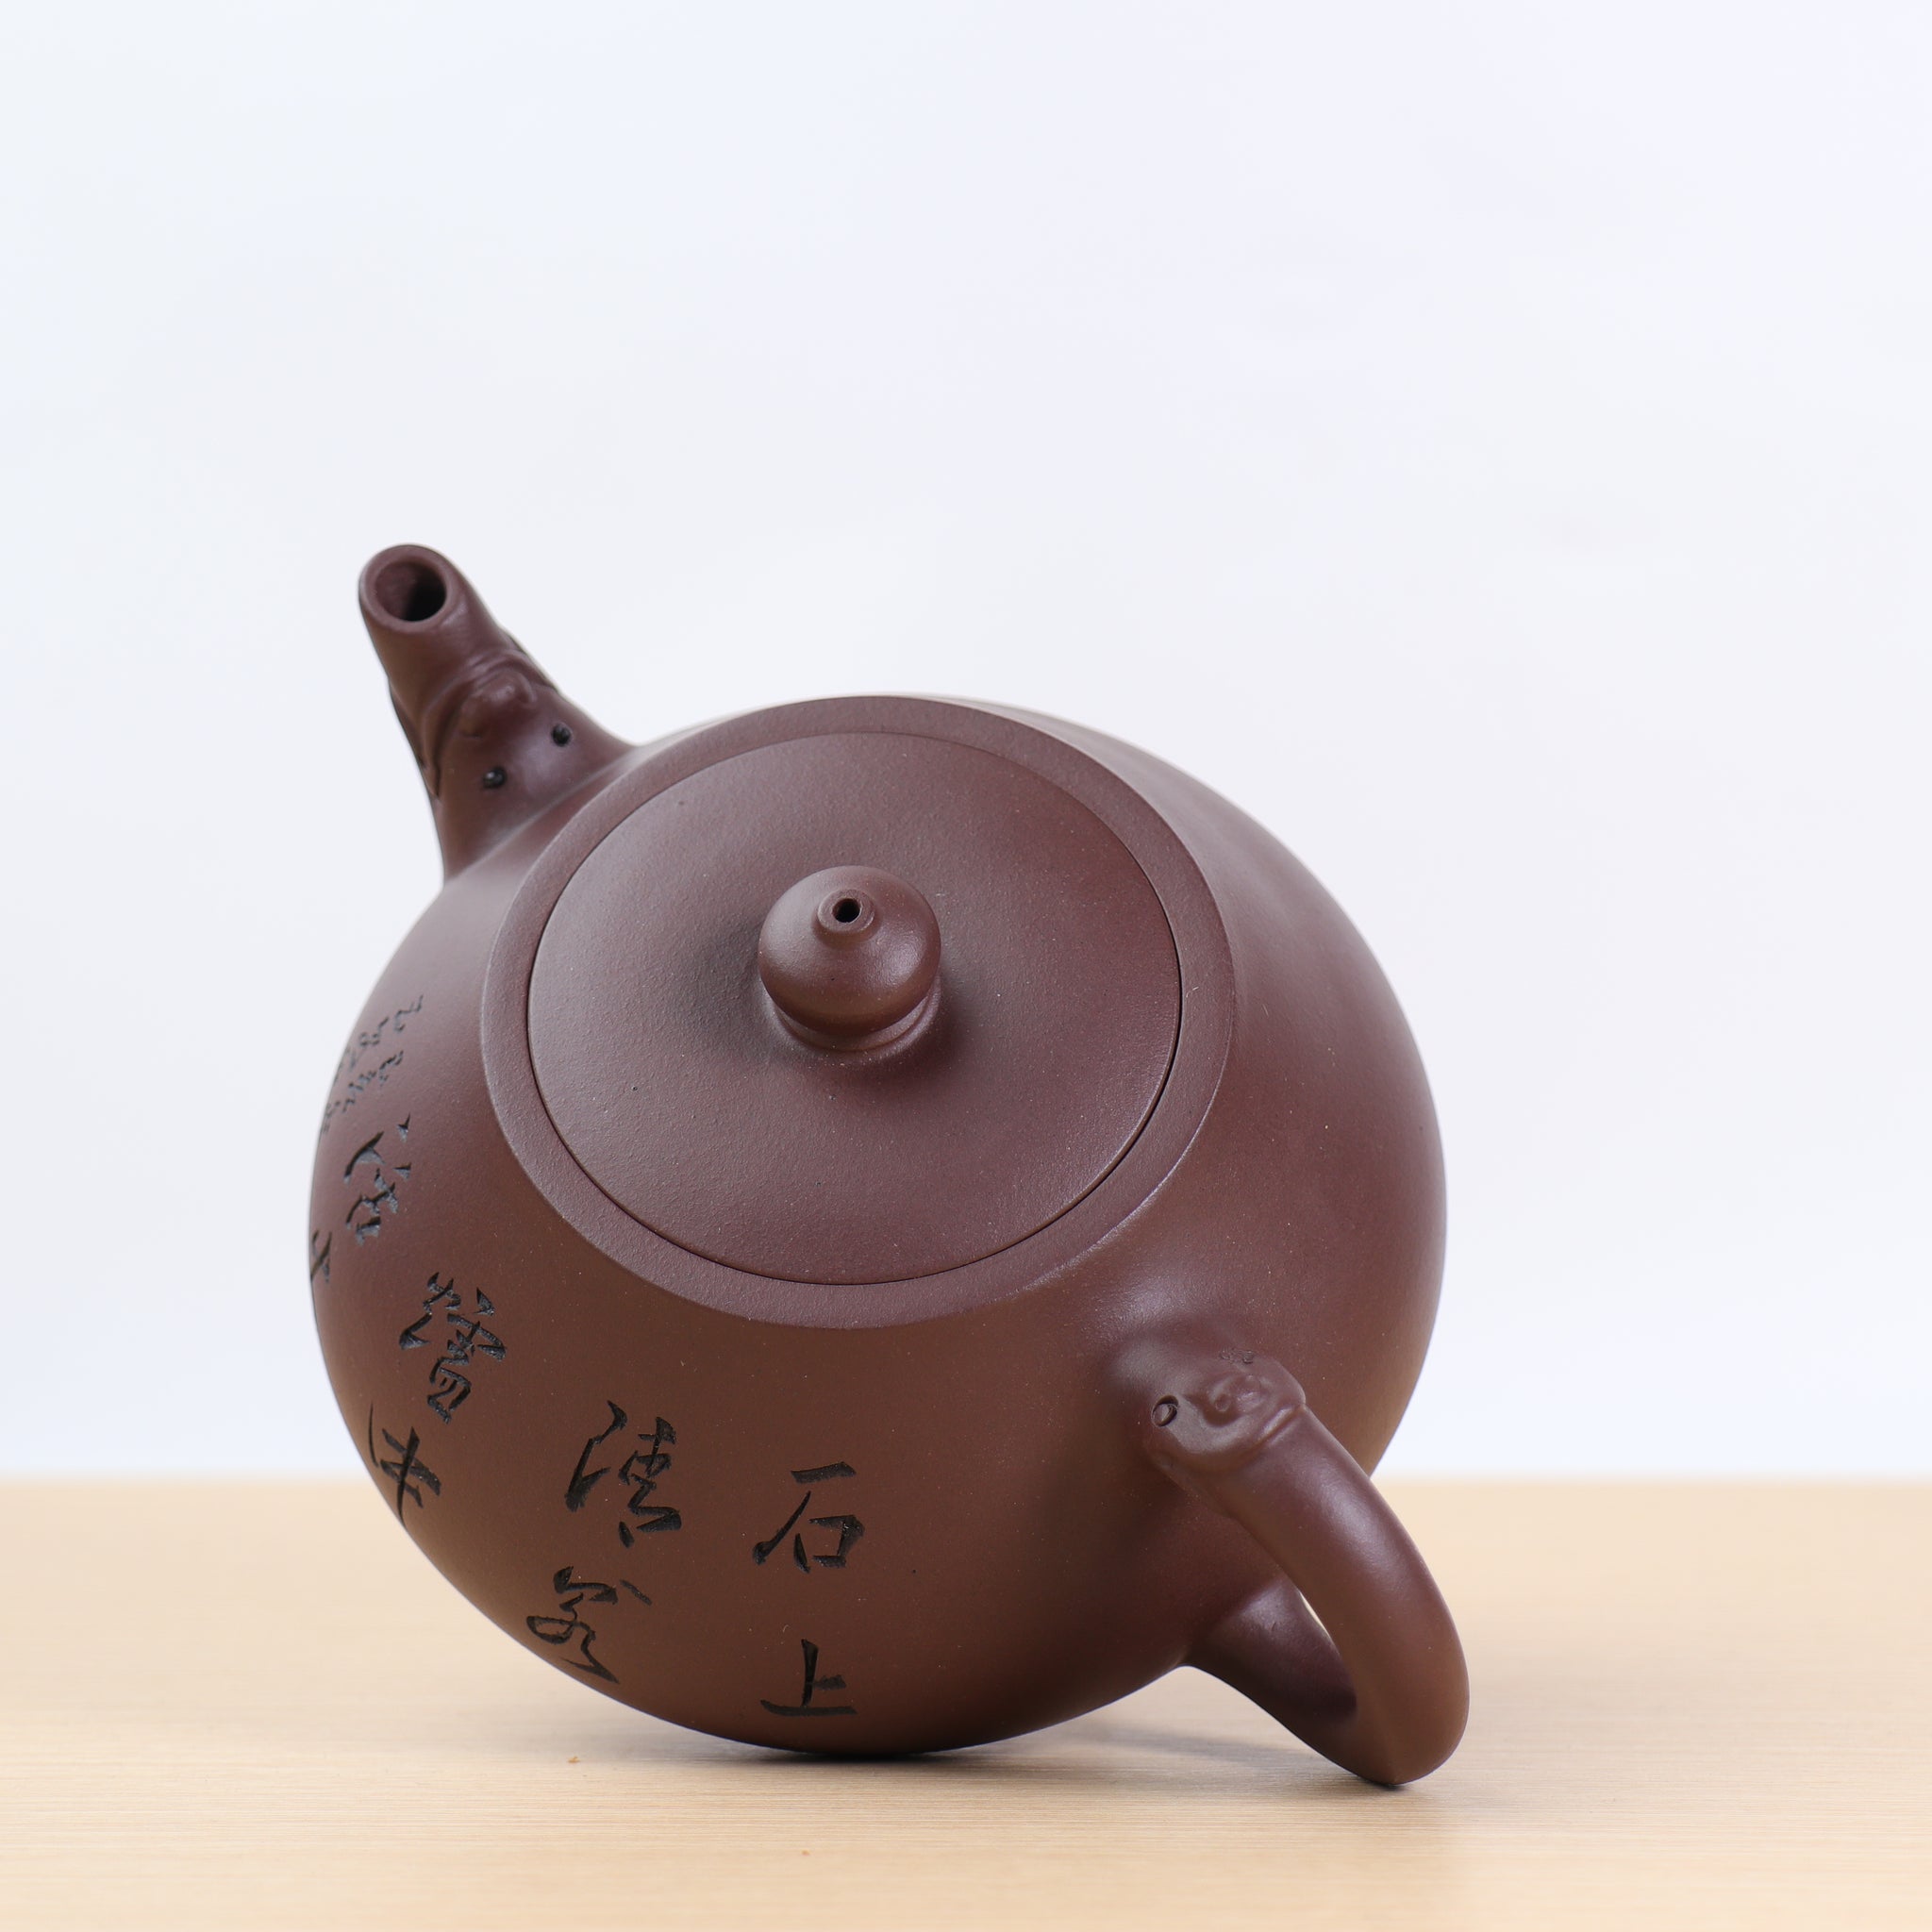 （已售出）【羊蓋石瓢】紫泥羊雕紫砂茶壺